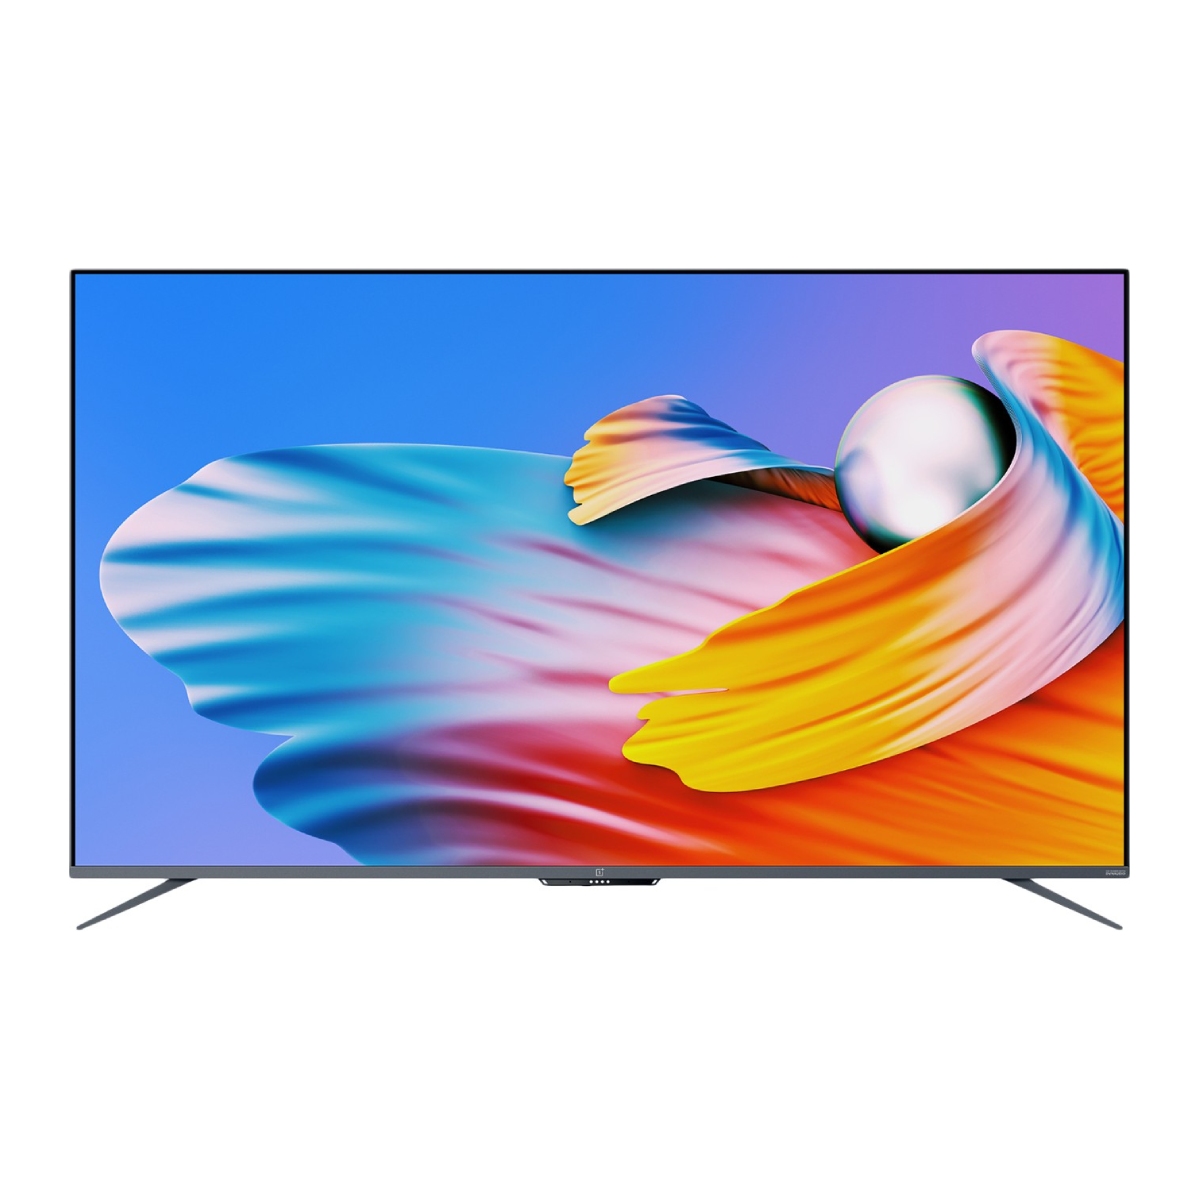  LED Smart TV 139 cm (55 inch) Ultra HD (4K)